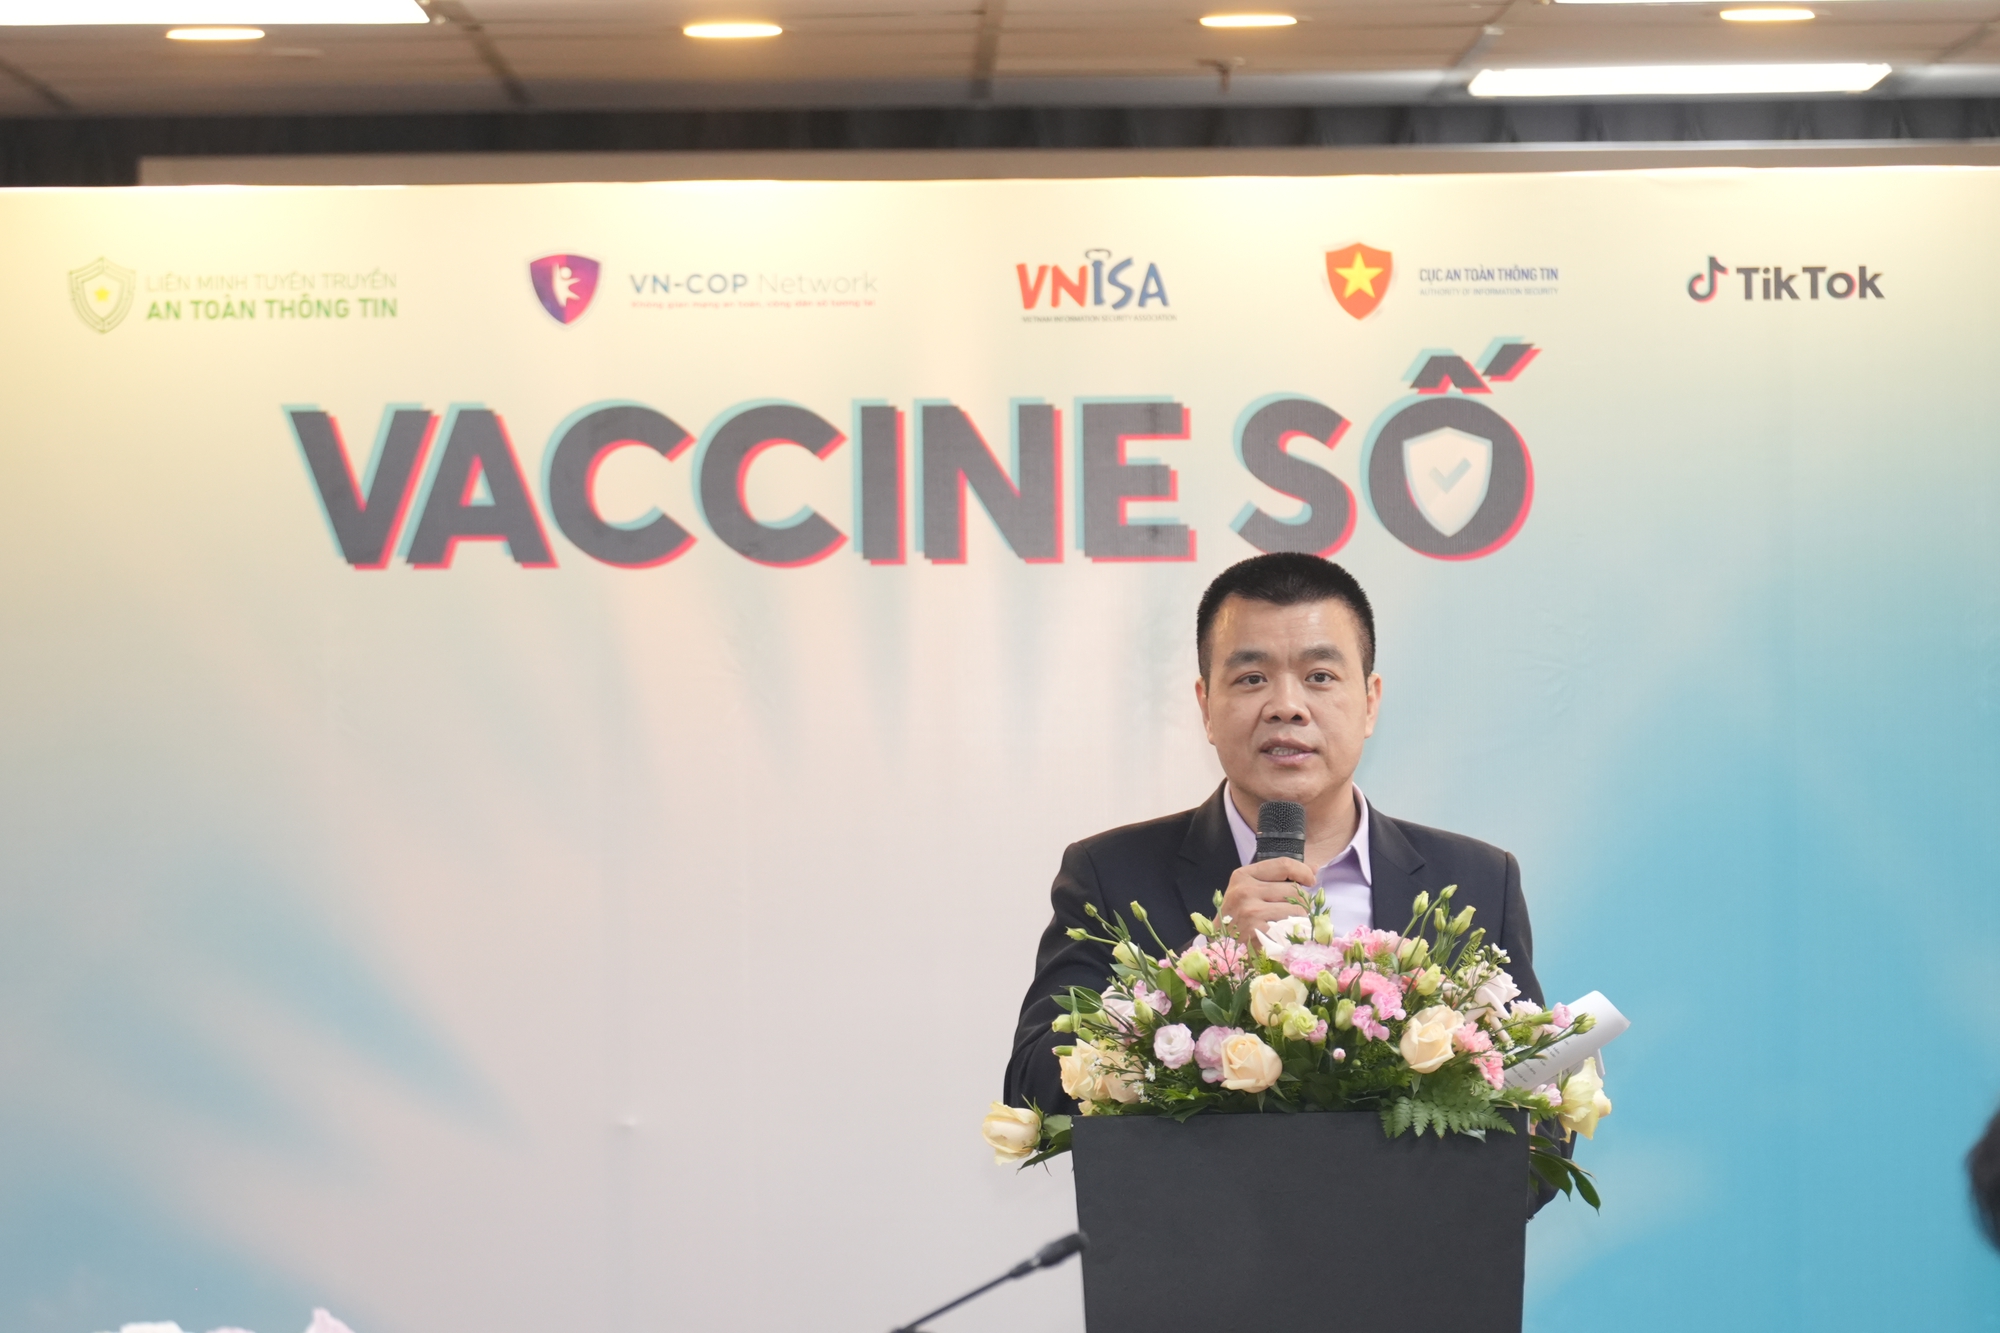 TikTok tái khởi động Chiến dịch #VaccineSo, chung tay nâng cao nhận thức cộng đồng về an toàn kỹ thuật số - Ảnh 3.